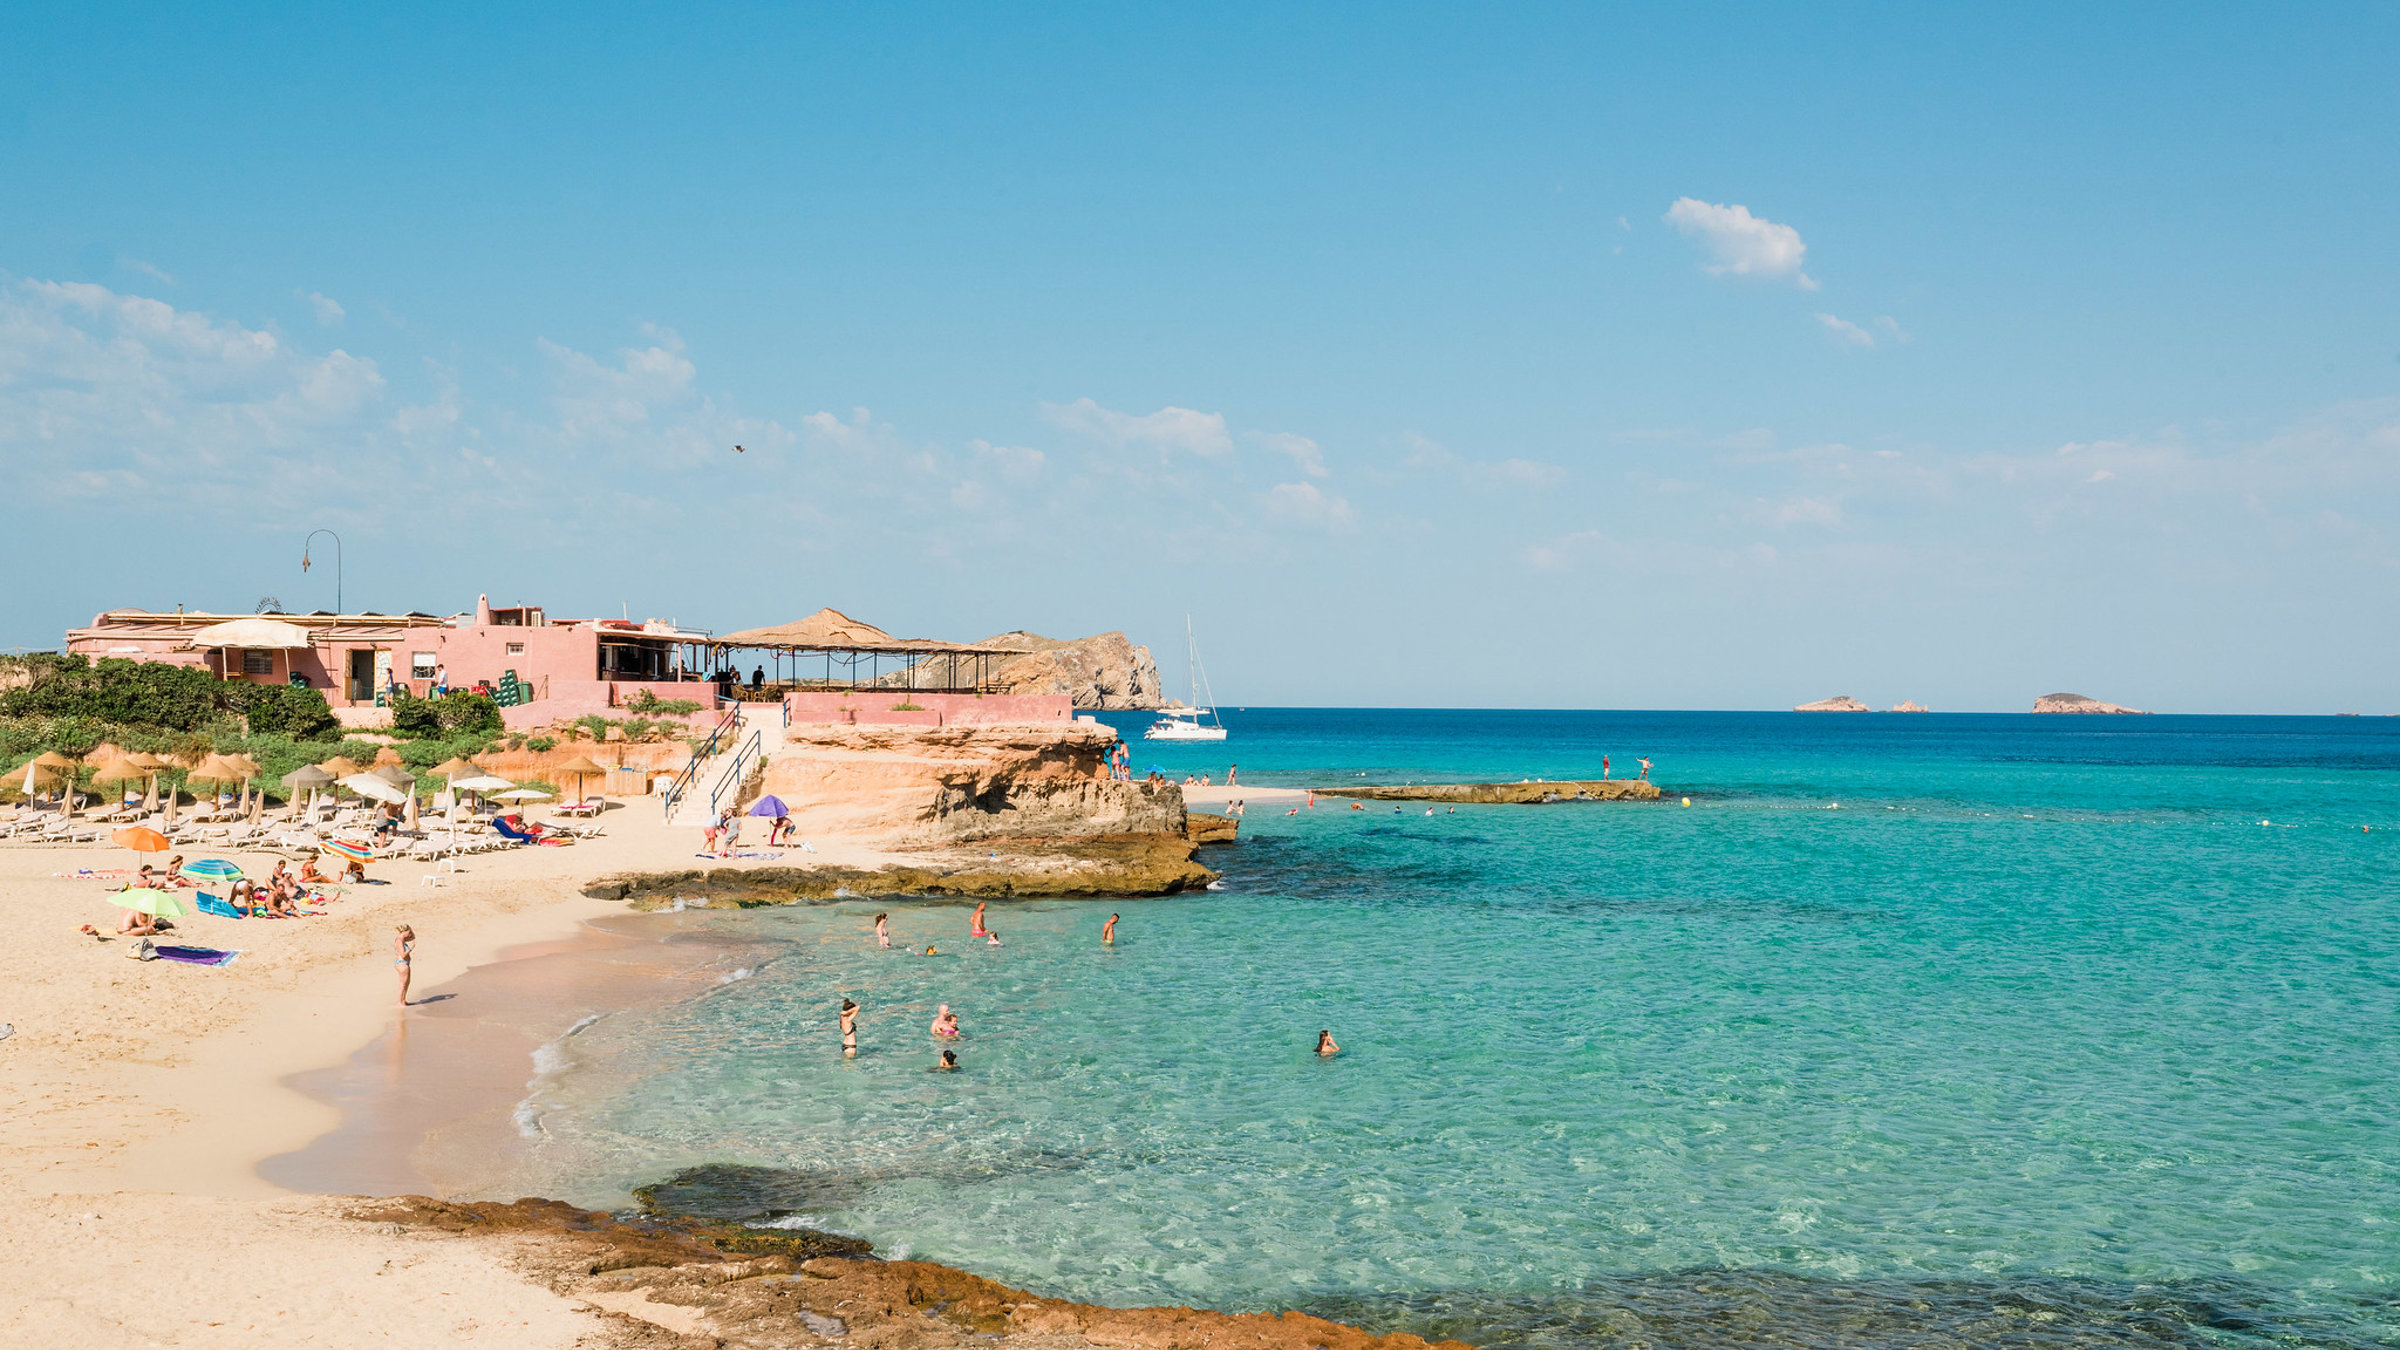 Postcards from Ibiza: Cala Conta